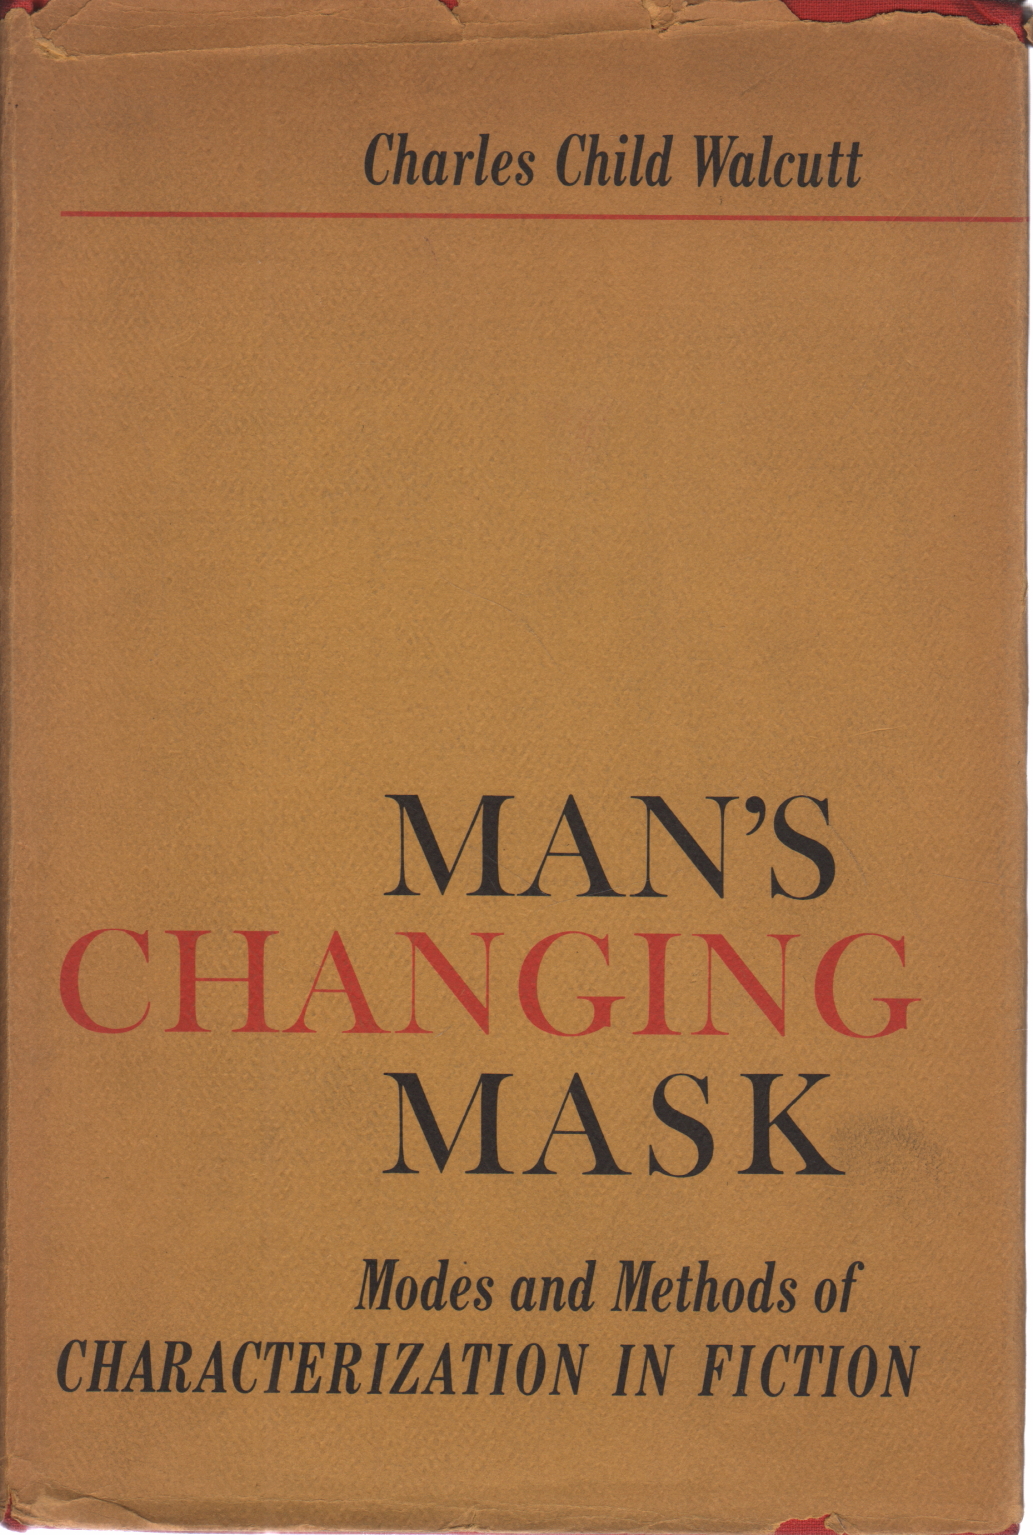 Man ' s changing mask, Charles Child Walcutt